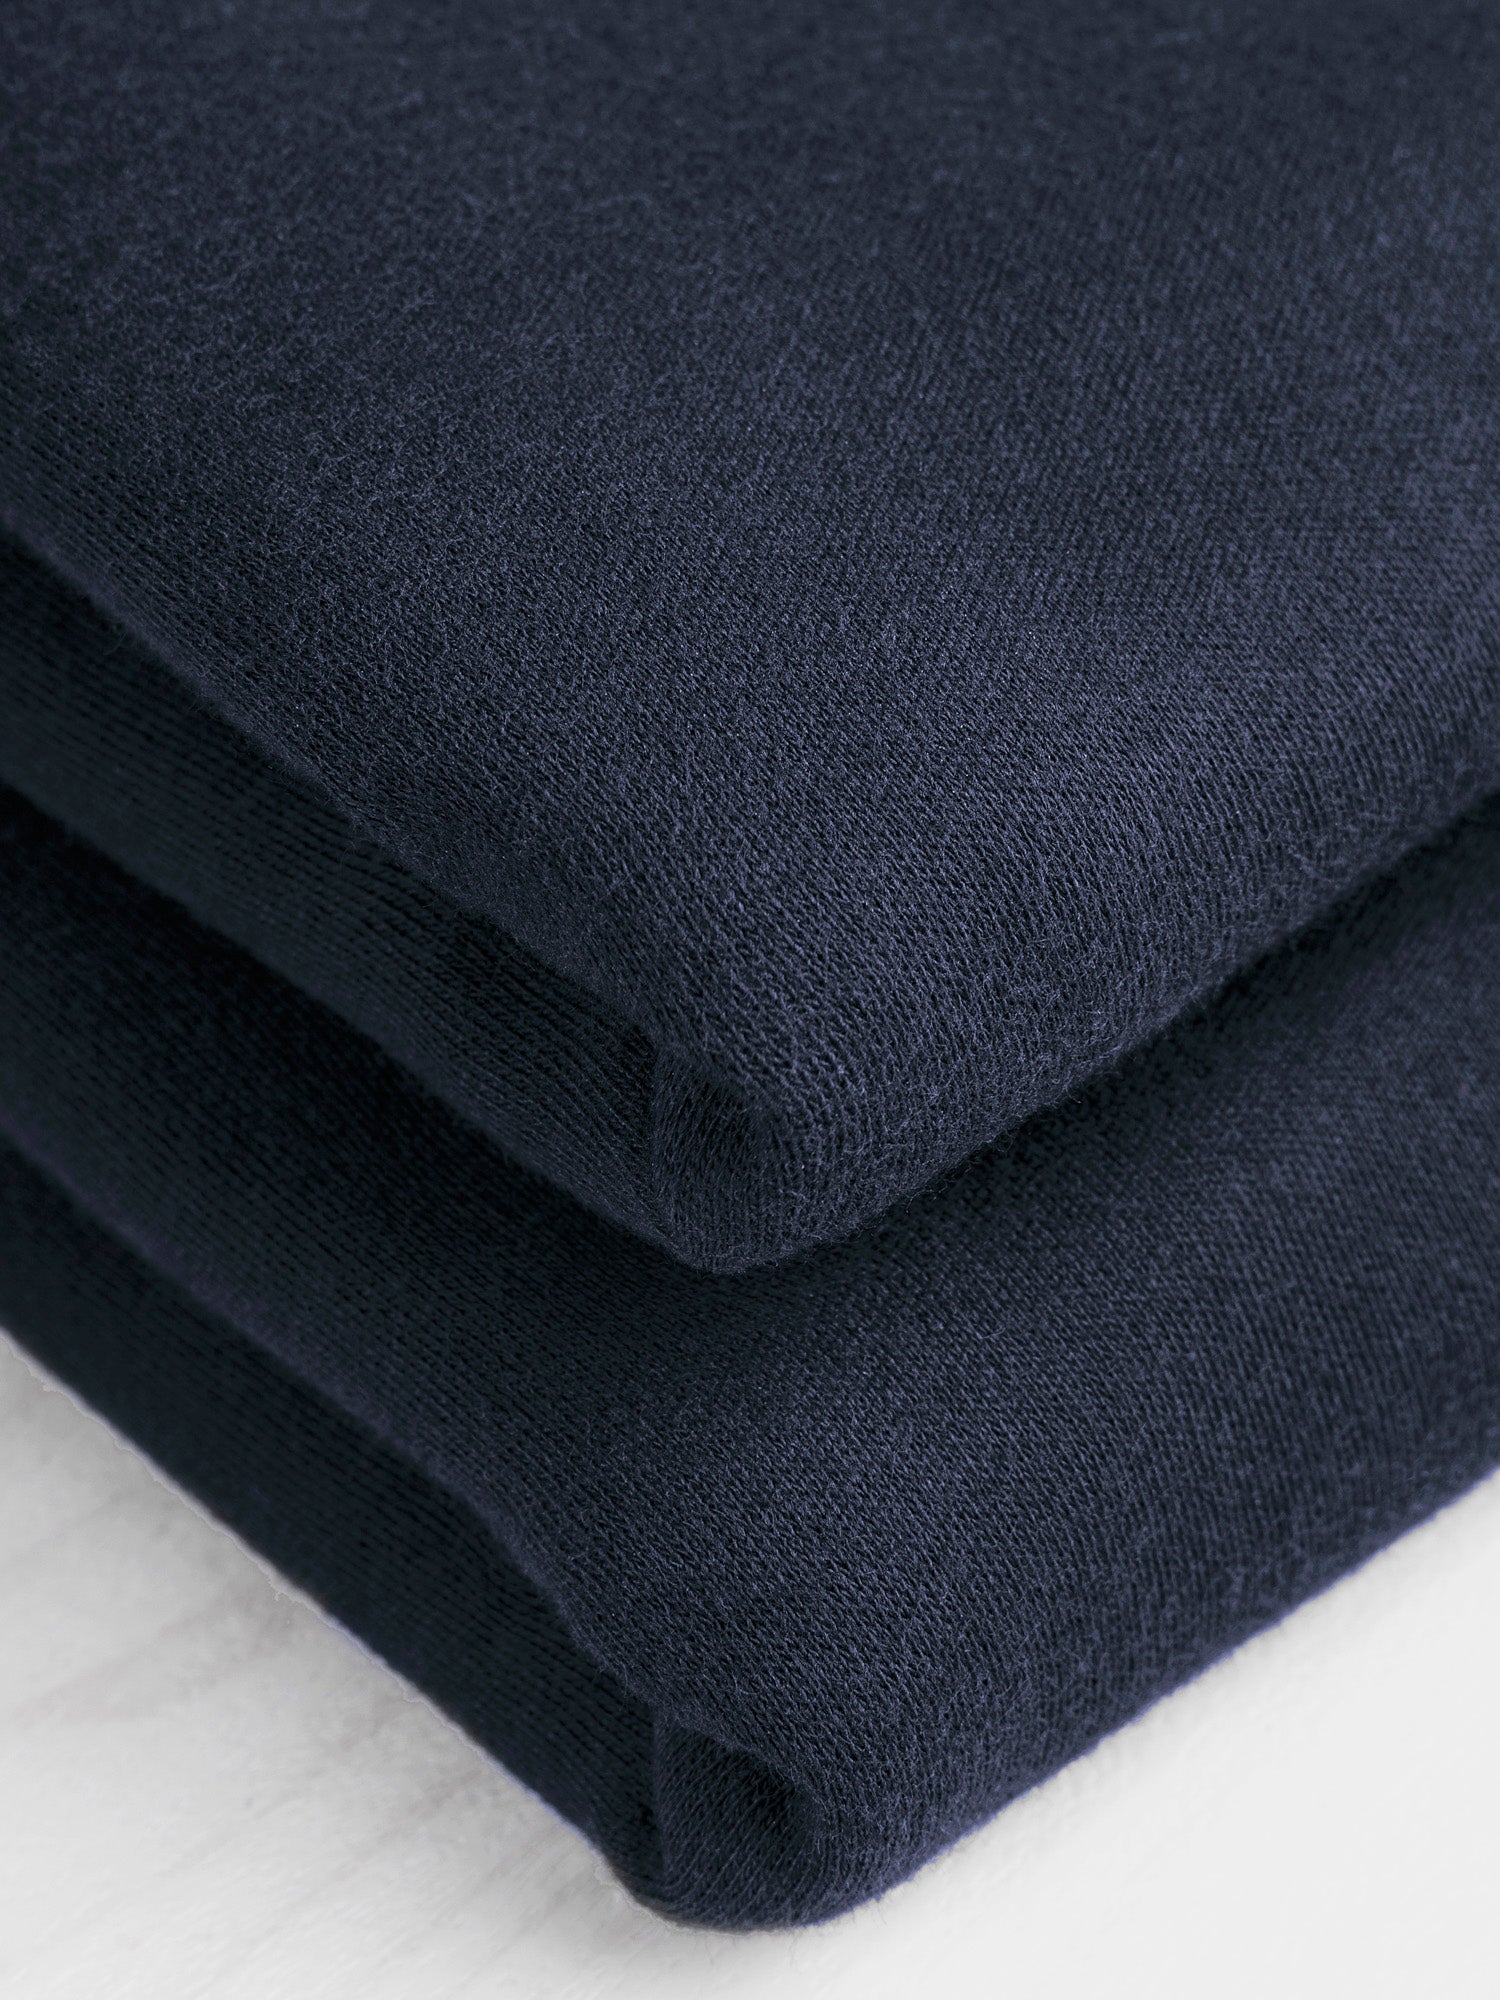 Luxe Organic Cotton Jersey Knit - Navy | Core Fabrics